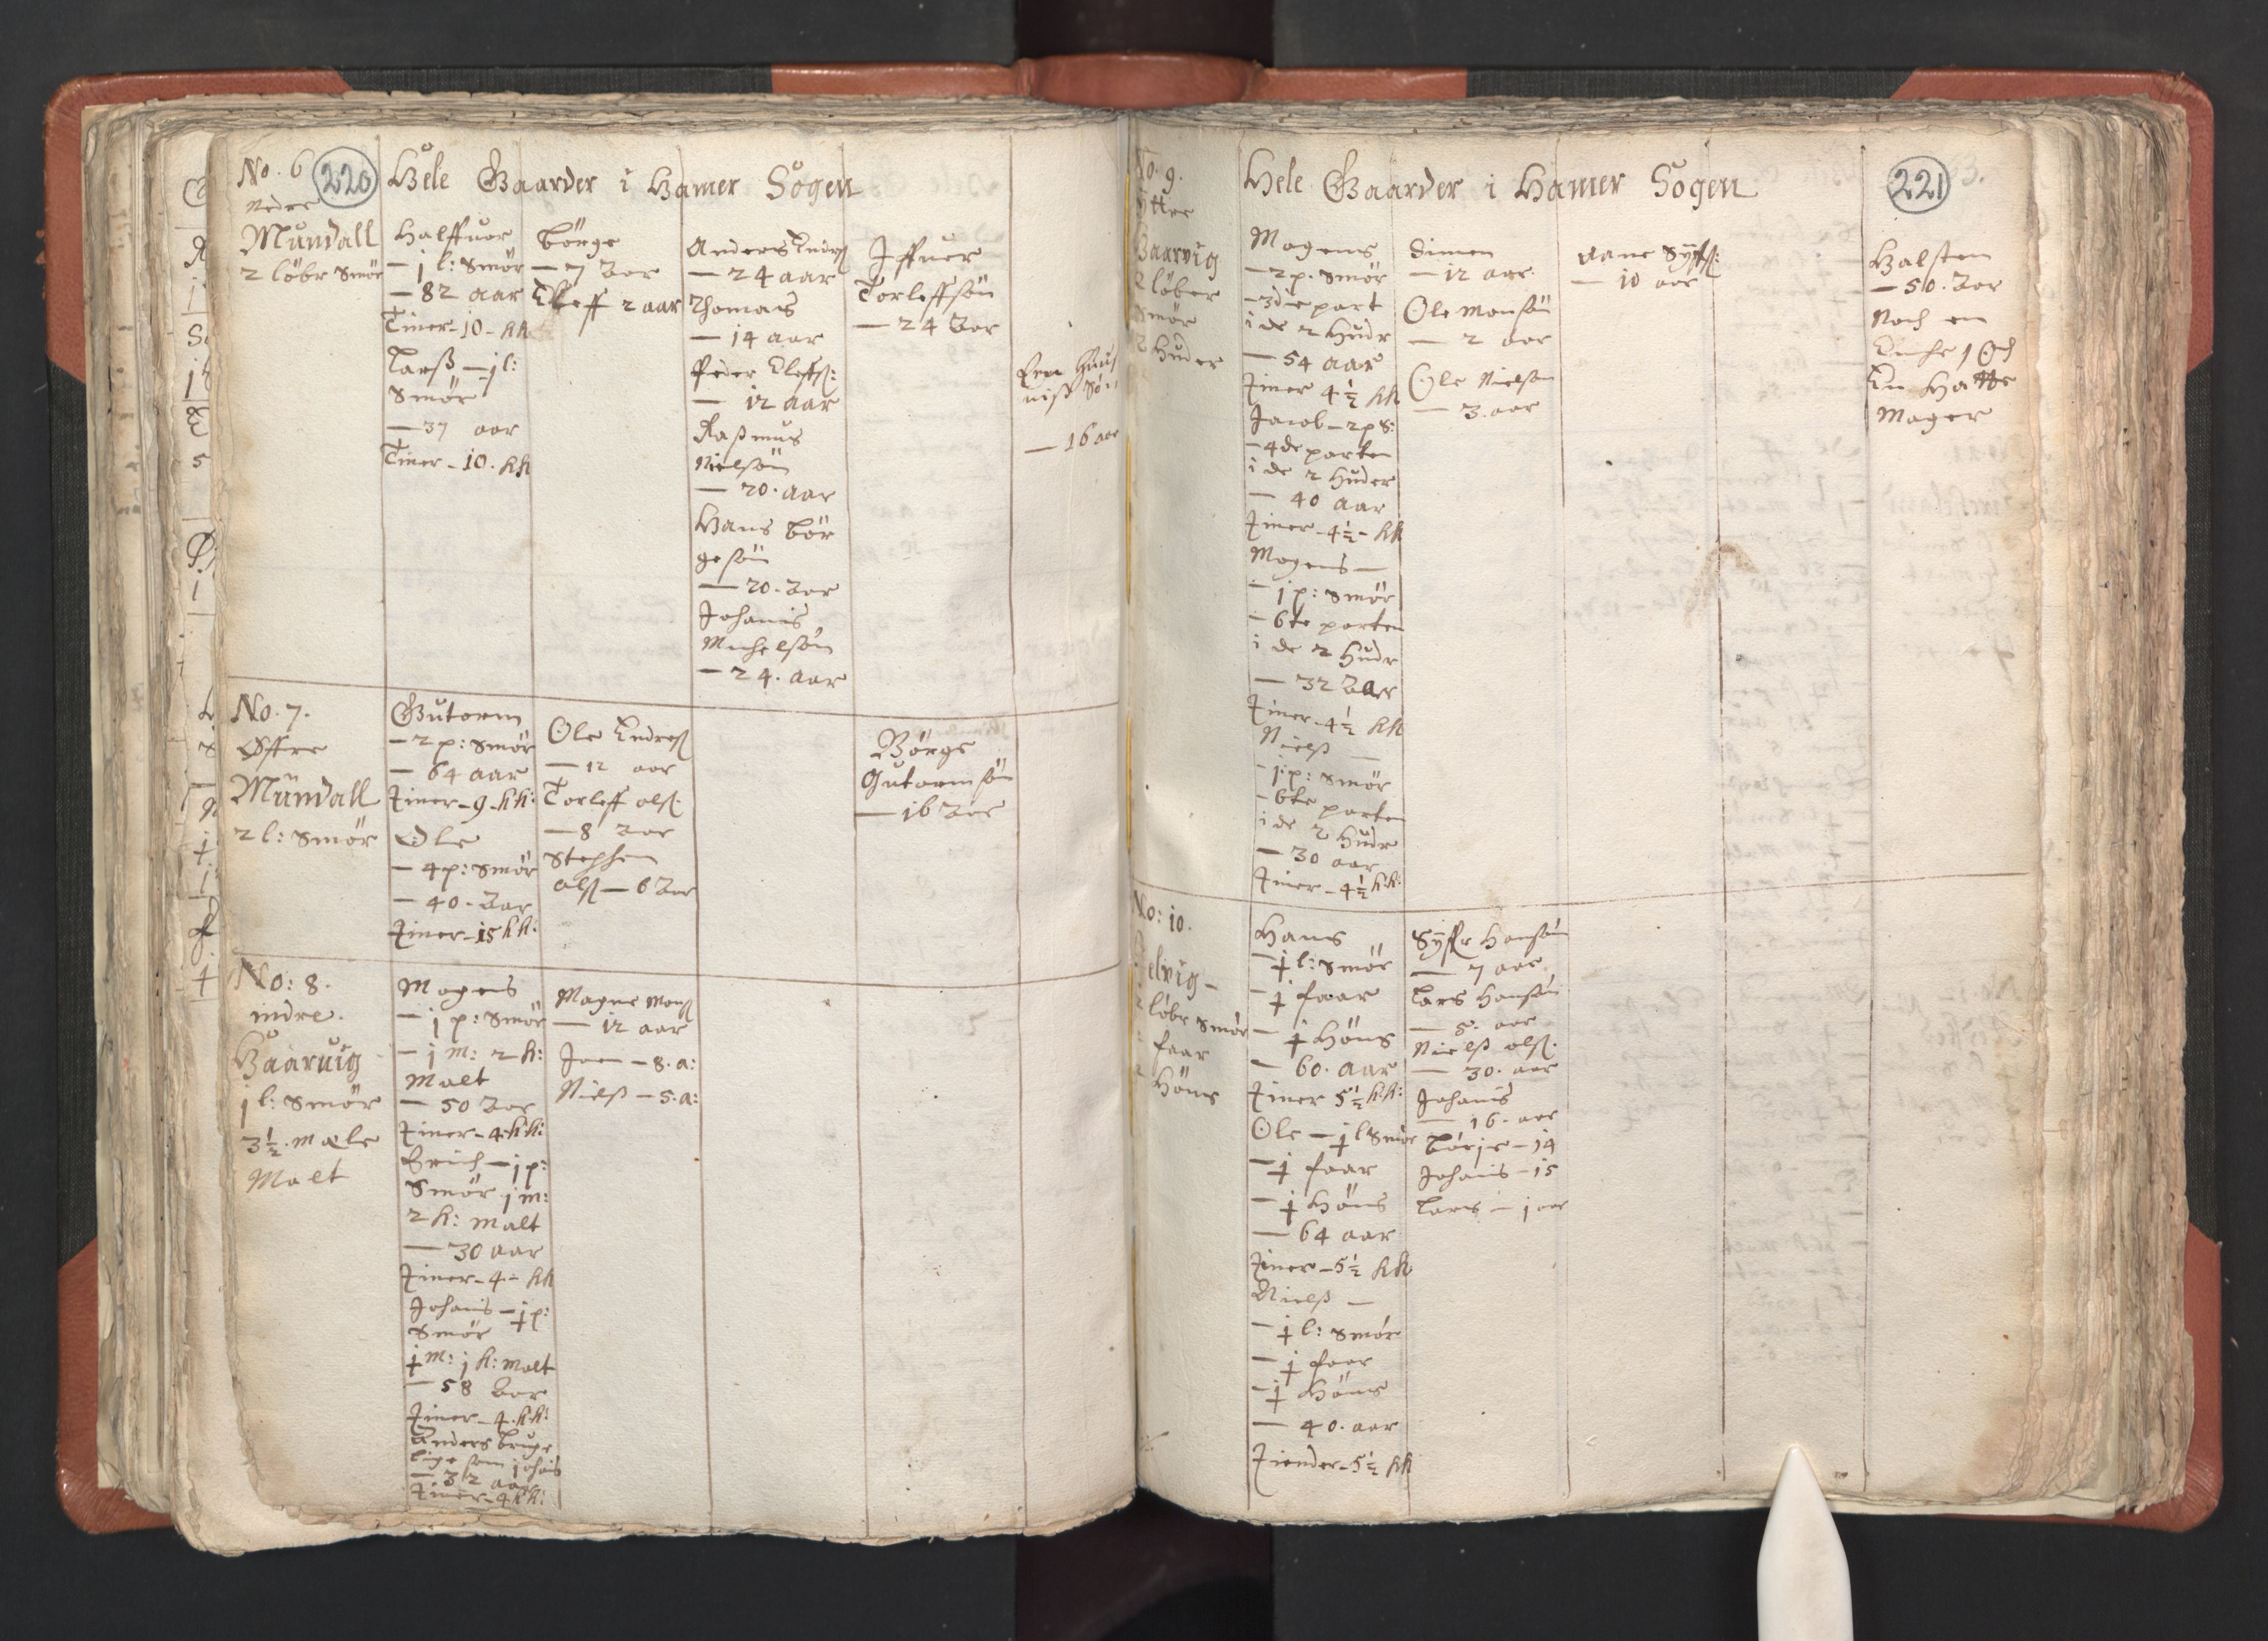 RA, Vicar's Census 1664-1666, no. 22: Nordhordland deanery, 1664-1666, p. 220-221